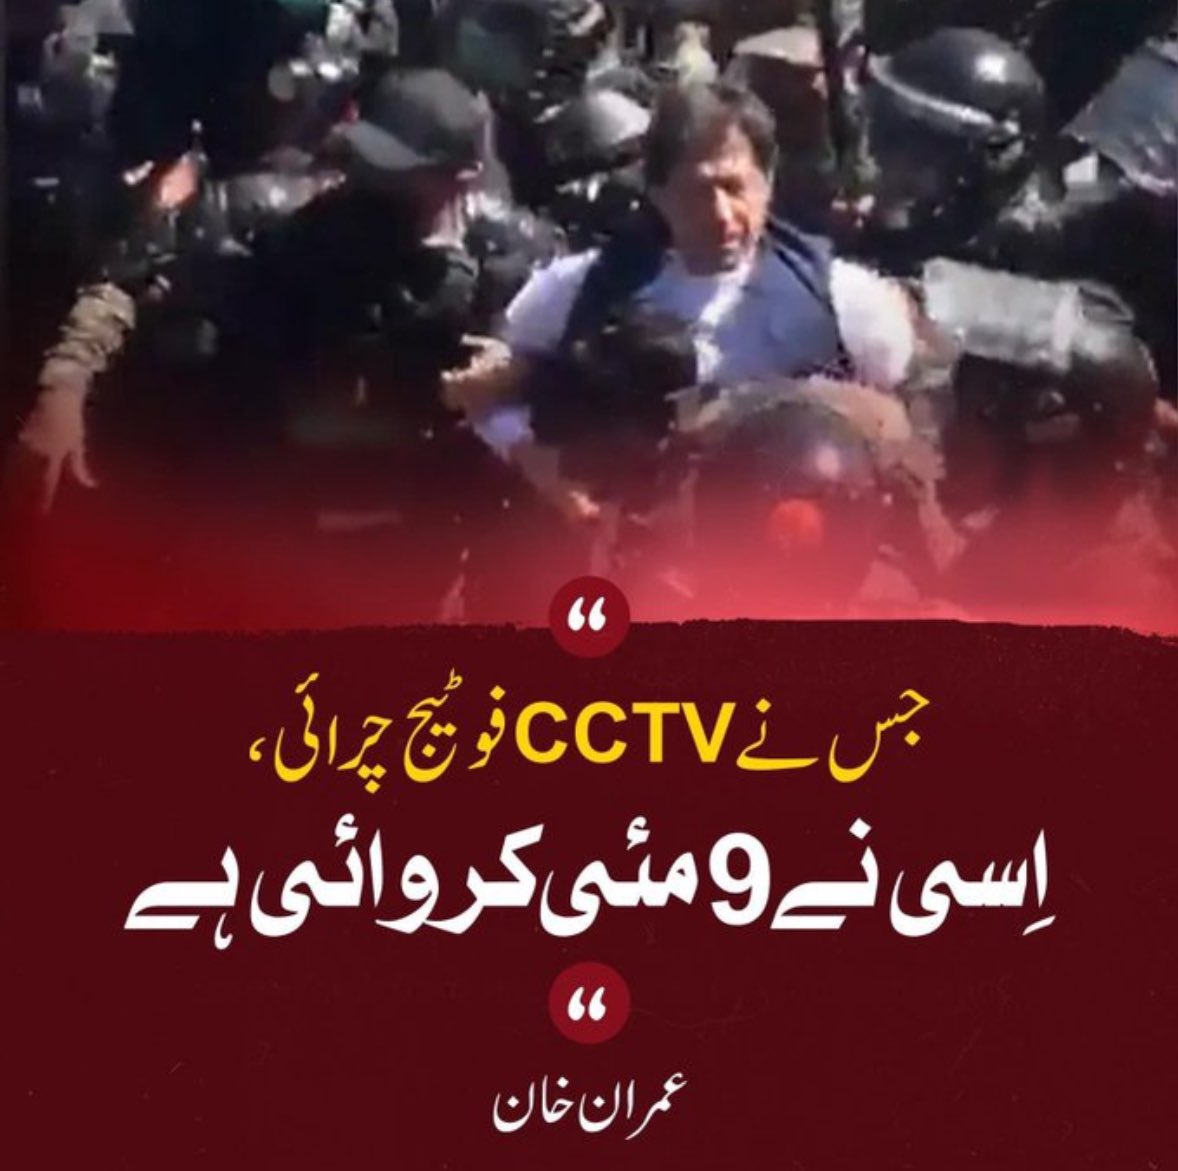 جس نے CCTV فوٹیج چرائی اِسی نے 9 مئی کروائی ہے.عمران خان #May9th_FalseFlag #خان_نے_نظام_ننگا_کر_دیا